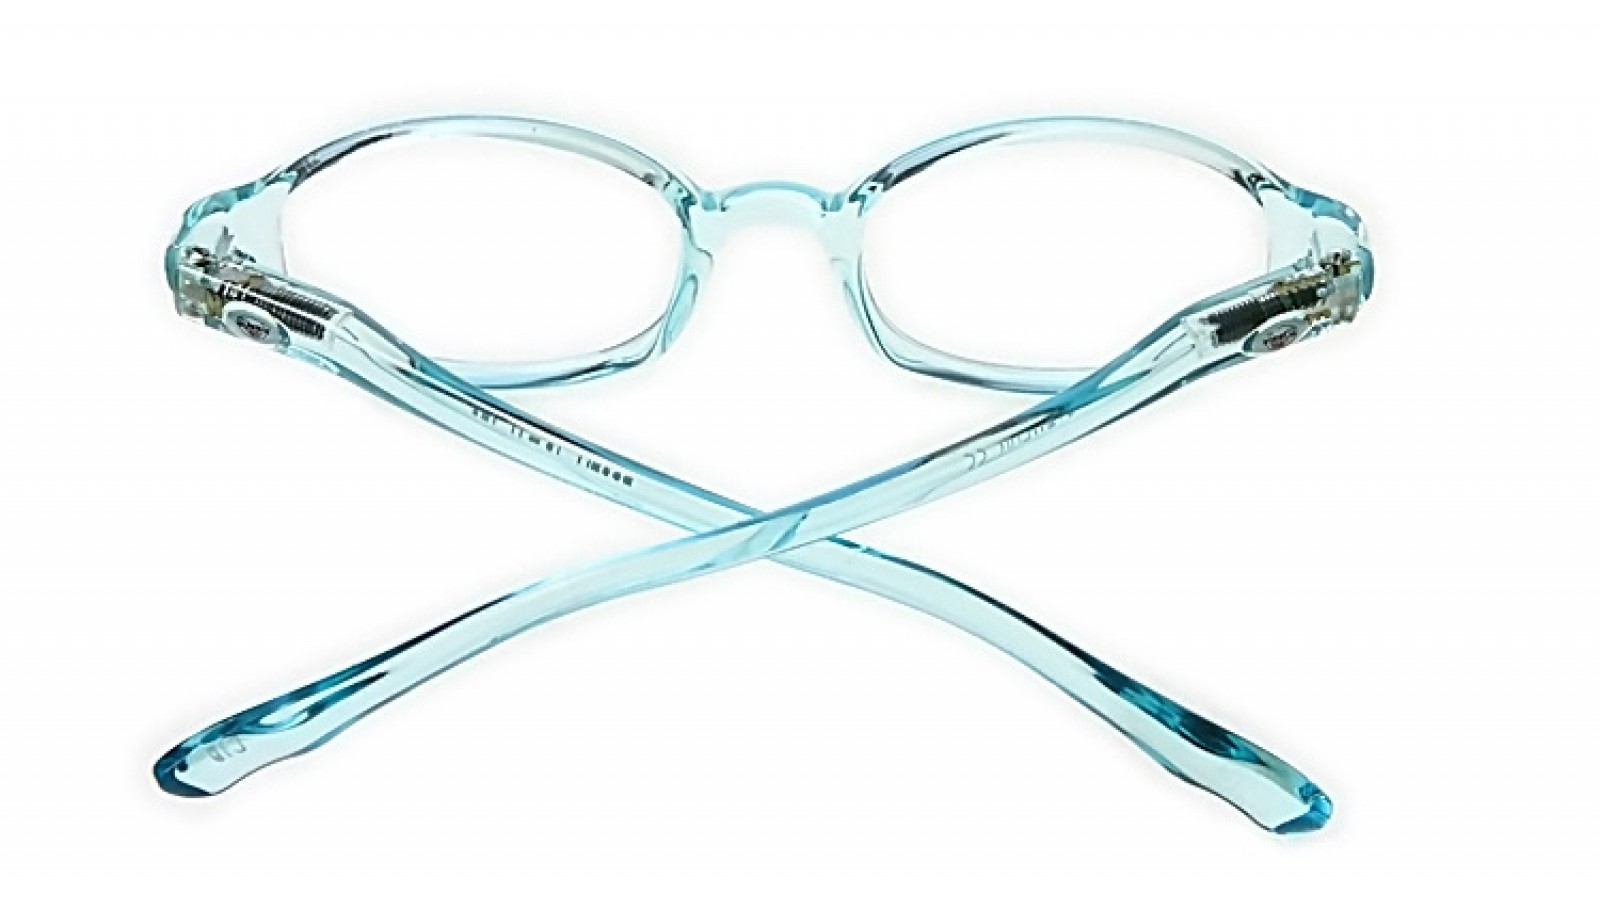 1 STÜCK Blau Schutzbrille Brille Transparente Brille Für Kinder Spiel S3H WZ W0H 